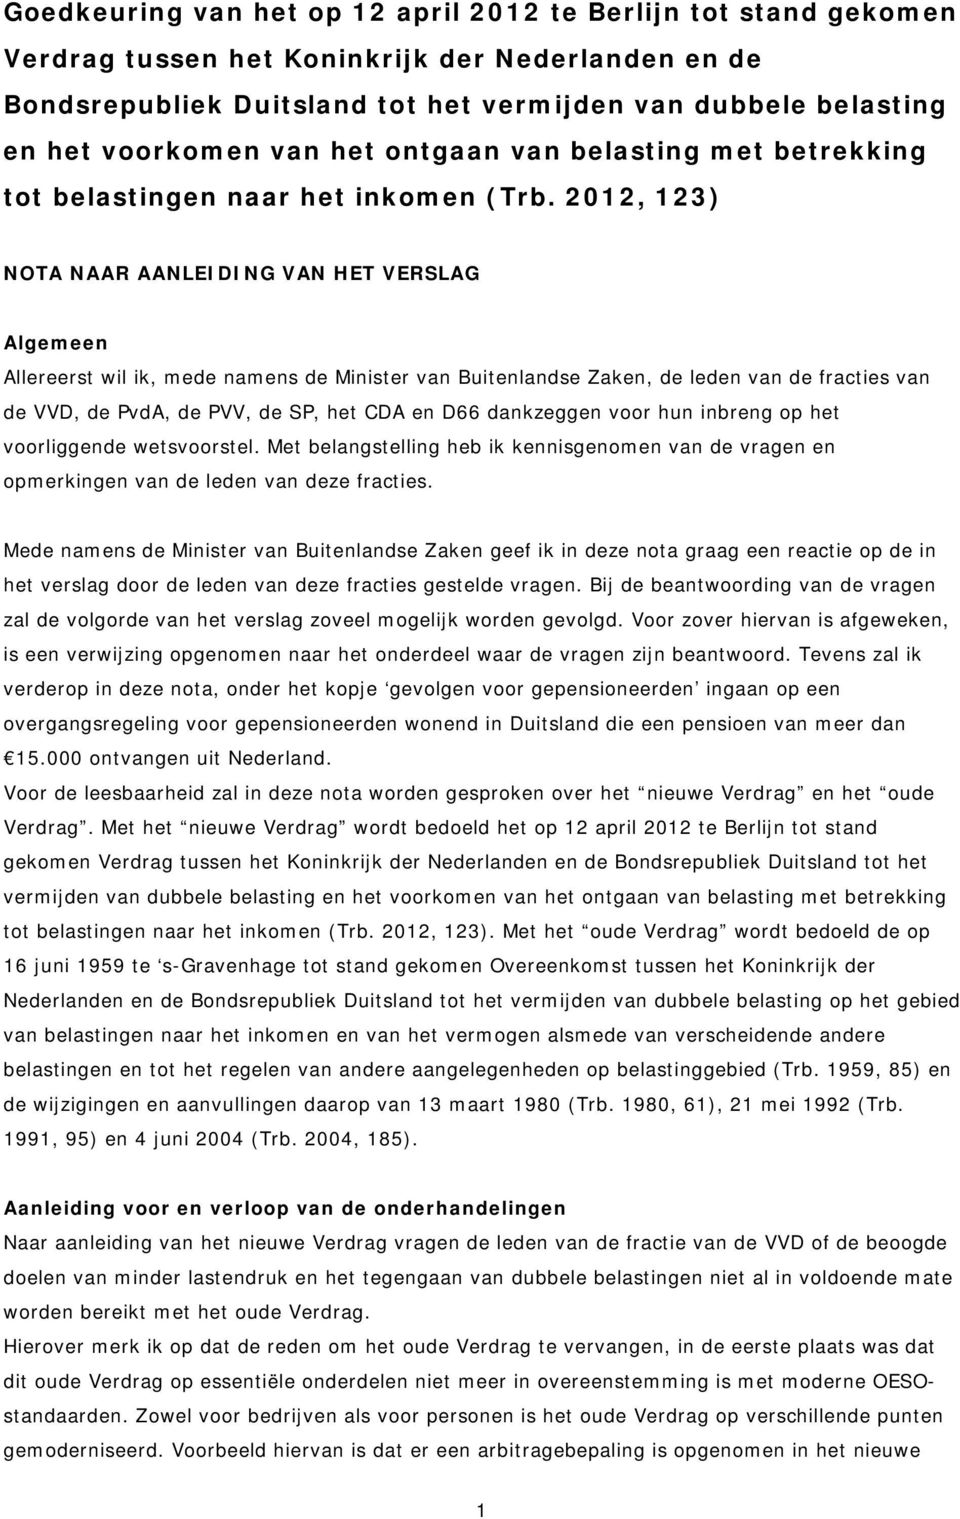 2012, 123) NOTA NAAR AANLEIDING VAN HET VERSLAG Algemeen Allereerst wil ik, mede namens de Minister van Buitenlandse Zaken, de leden van de fracties van de VVD, de PvdA, de PVV, de SP, het CDA en D66